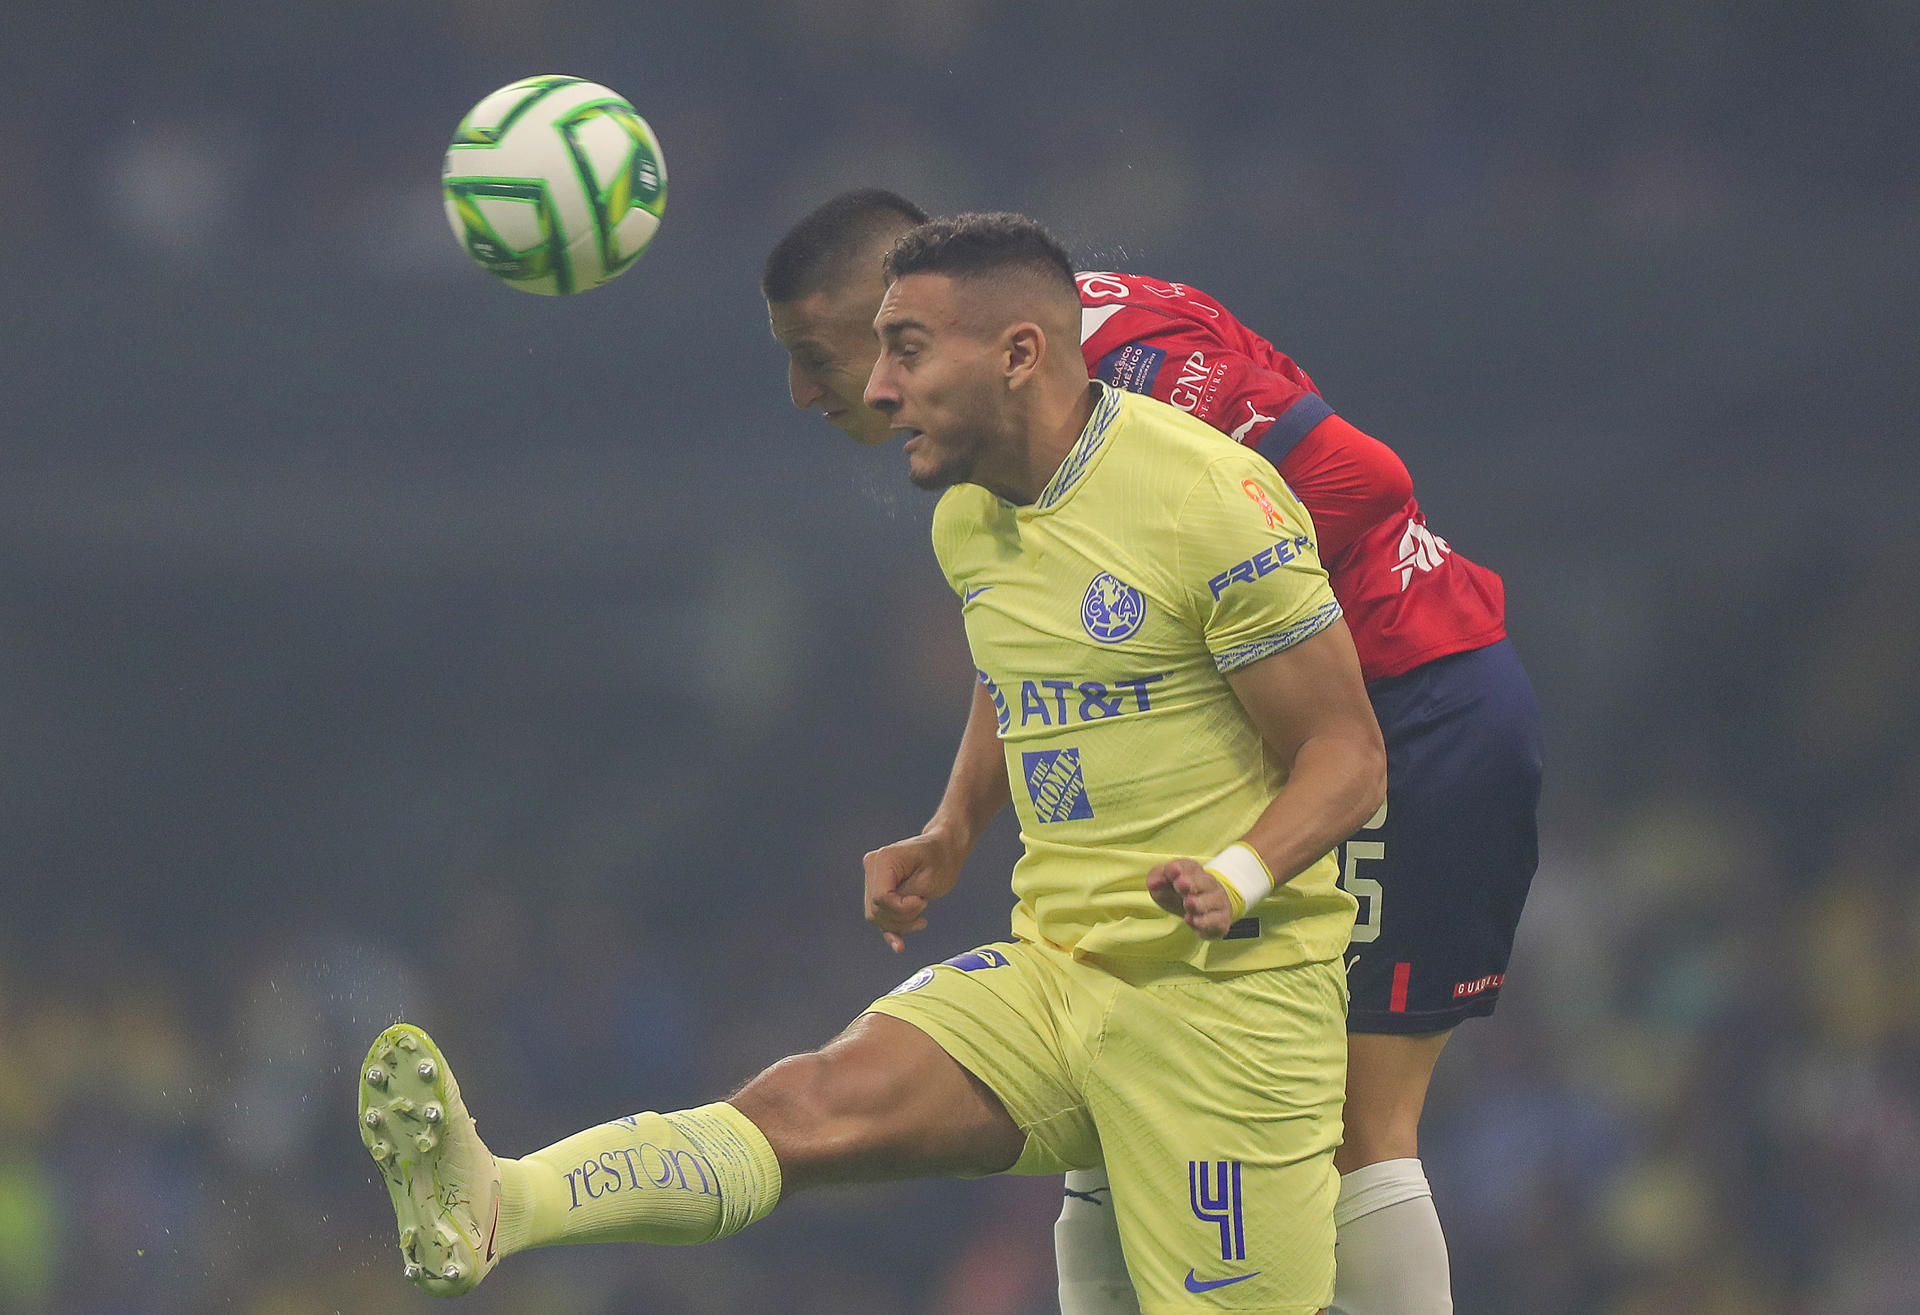 Sebastián Cáceres (frente) de América disputa un balón con Roberto Alvarado (atrás) de Chivas, durante un juego en el Estadio Azteca de la Ciudad de México (México). Fotografía de archivo. EFE/Isaac Esquivel